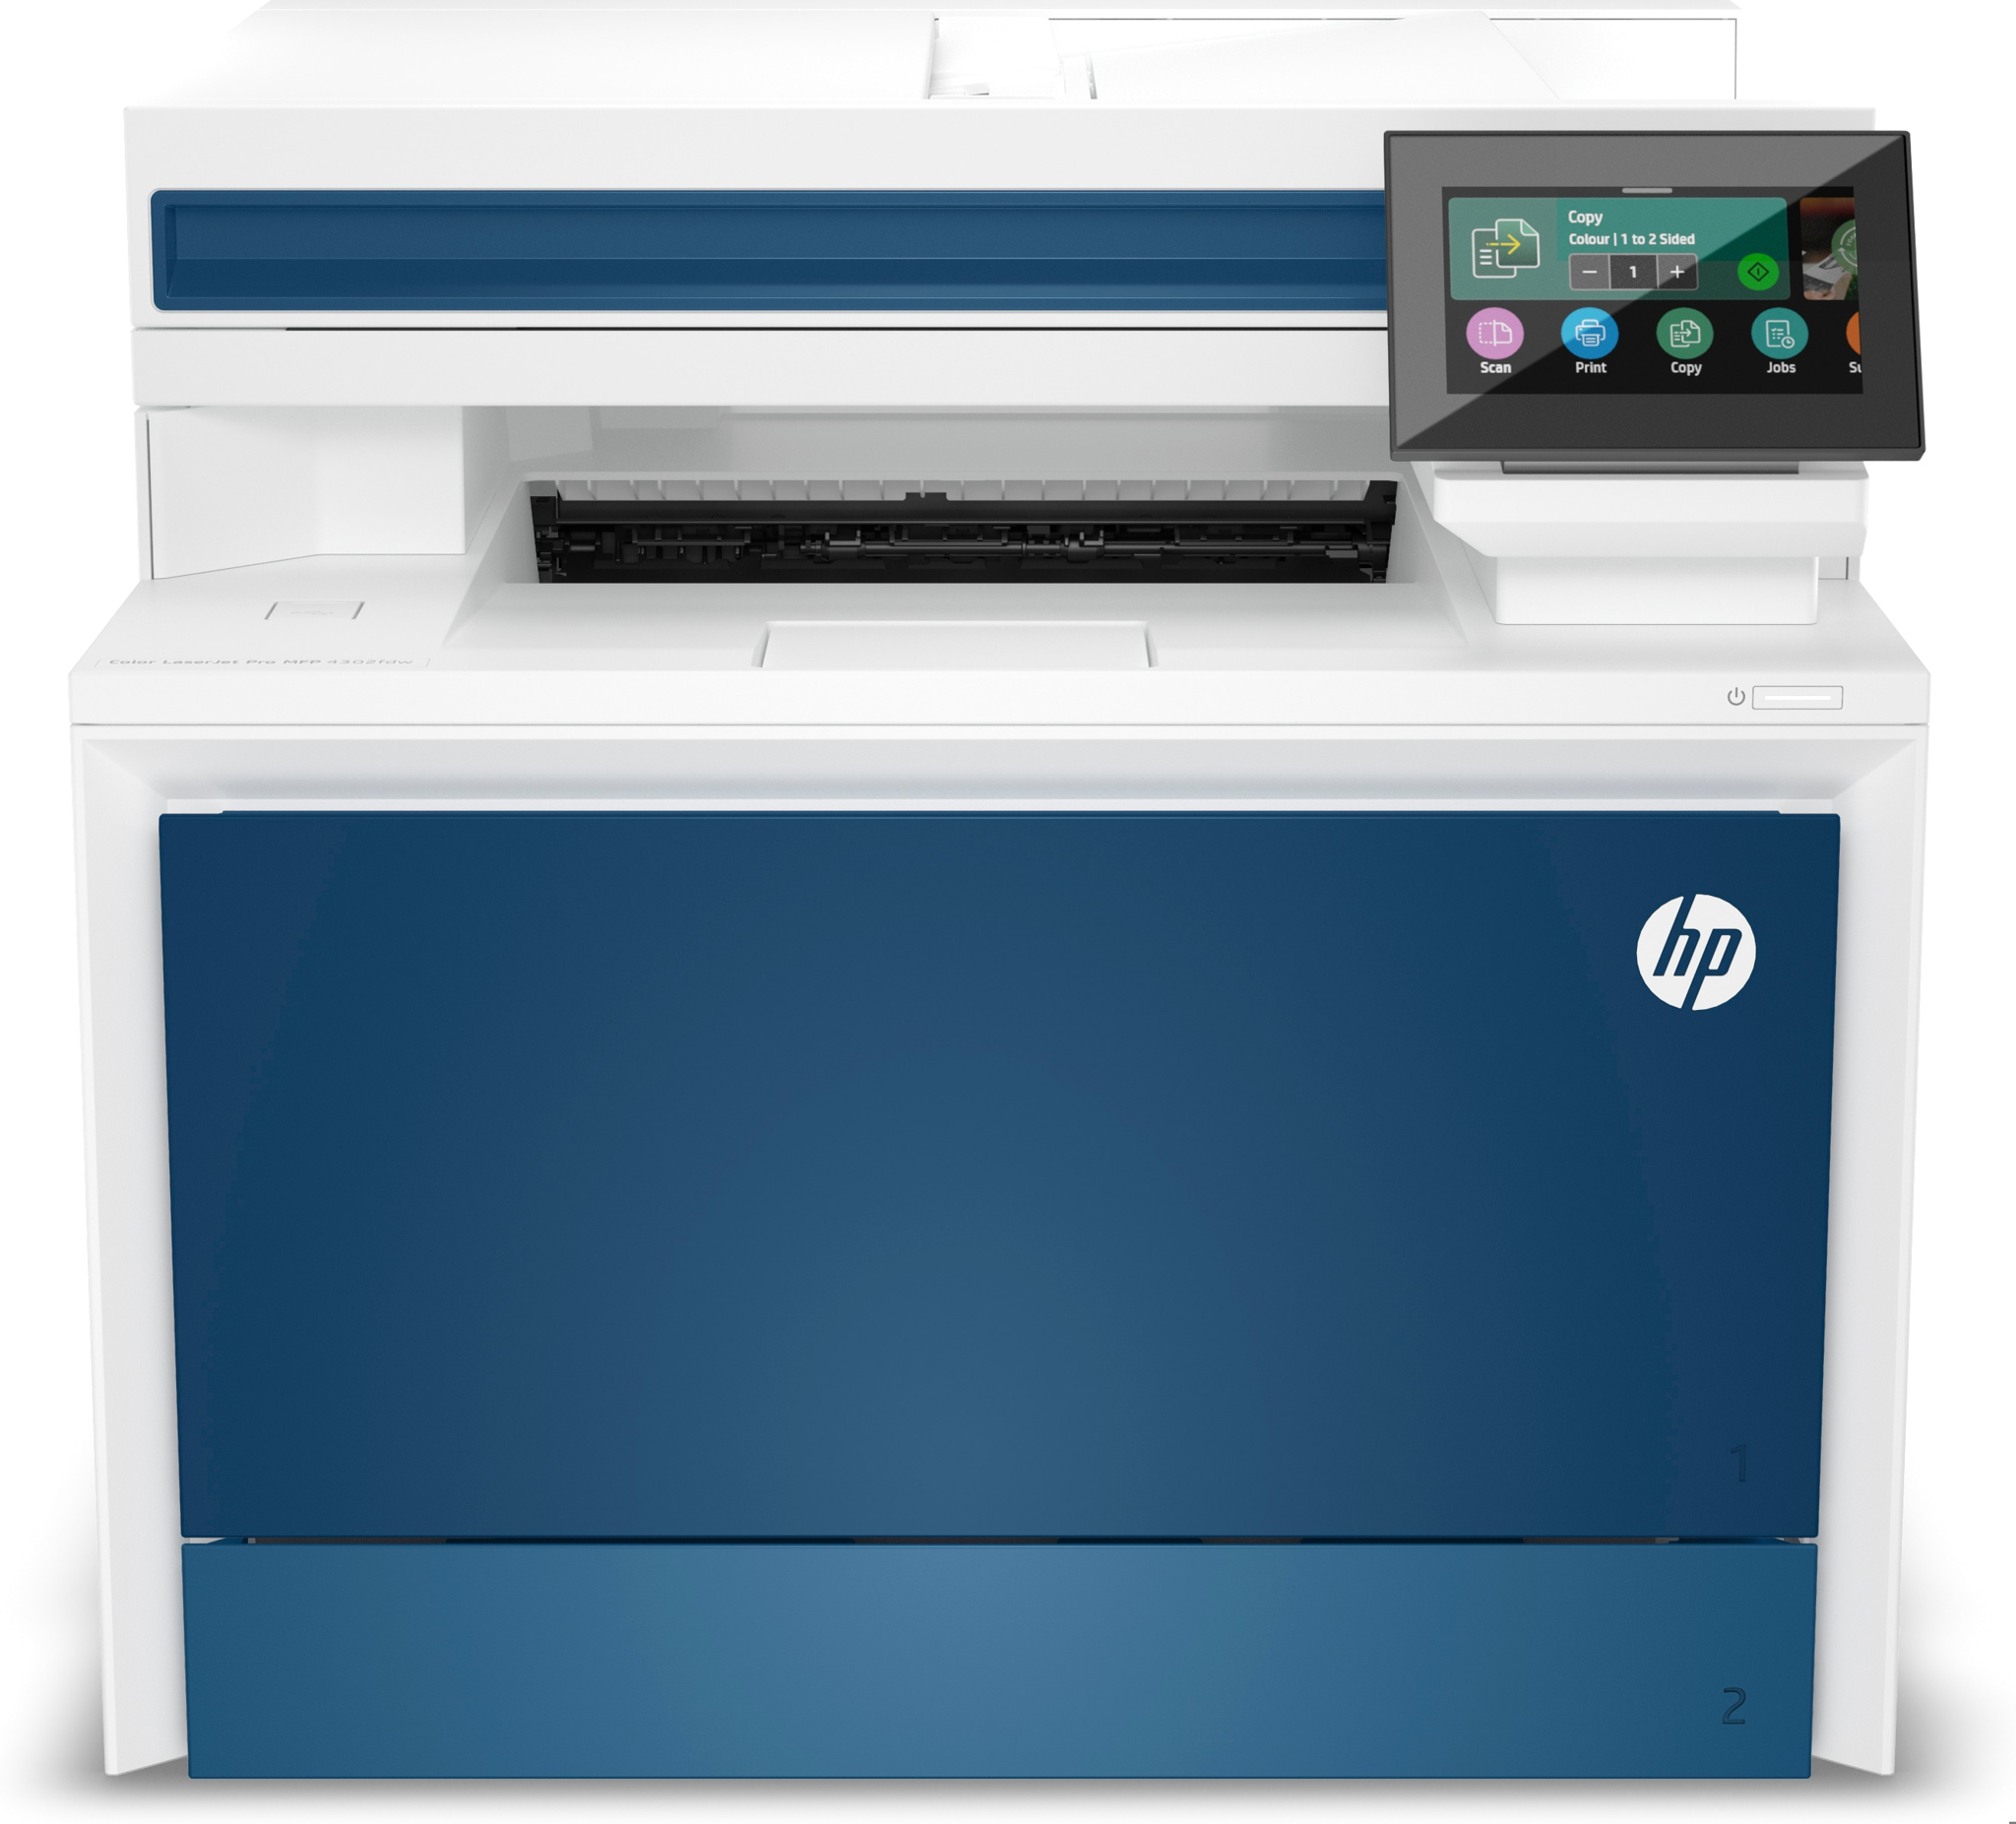 Bild von HP Color LaserJet Pro MFP 4302fdw Drucker - Farbe - Drucker für Kleine und mittlere Unternehmen - Drucken - Kopieren - Scannen - Faxen - Wireless; Drucken vom Smartphone oder Tablet; Automatische Dokumentenzuführung - Laser - Farbdruck - 600 x 600 DPI - A4 -